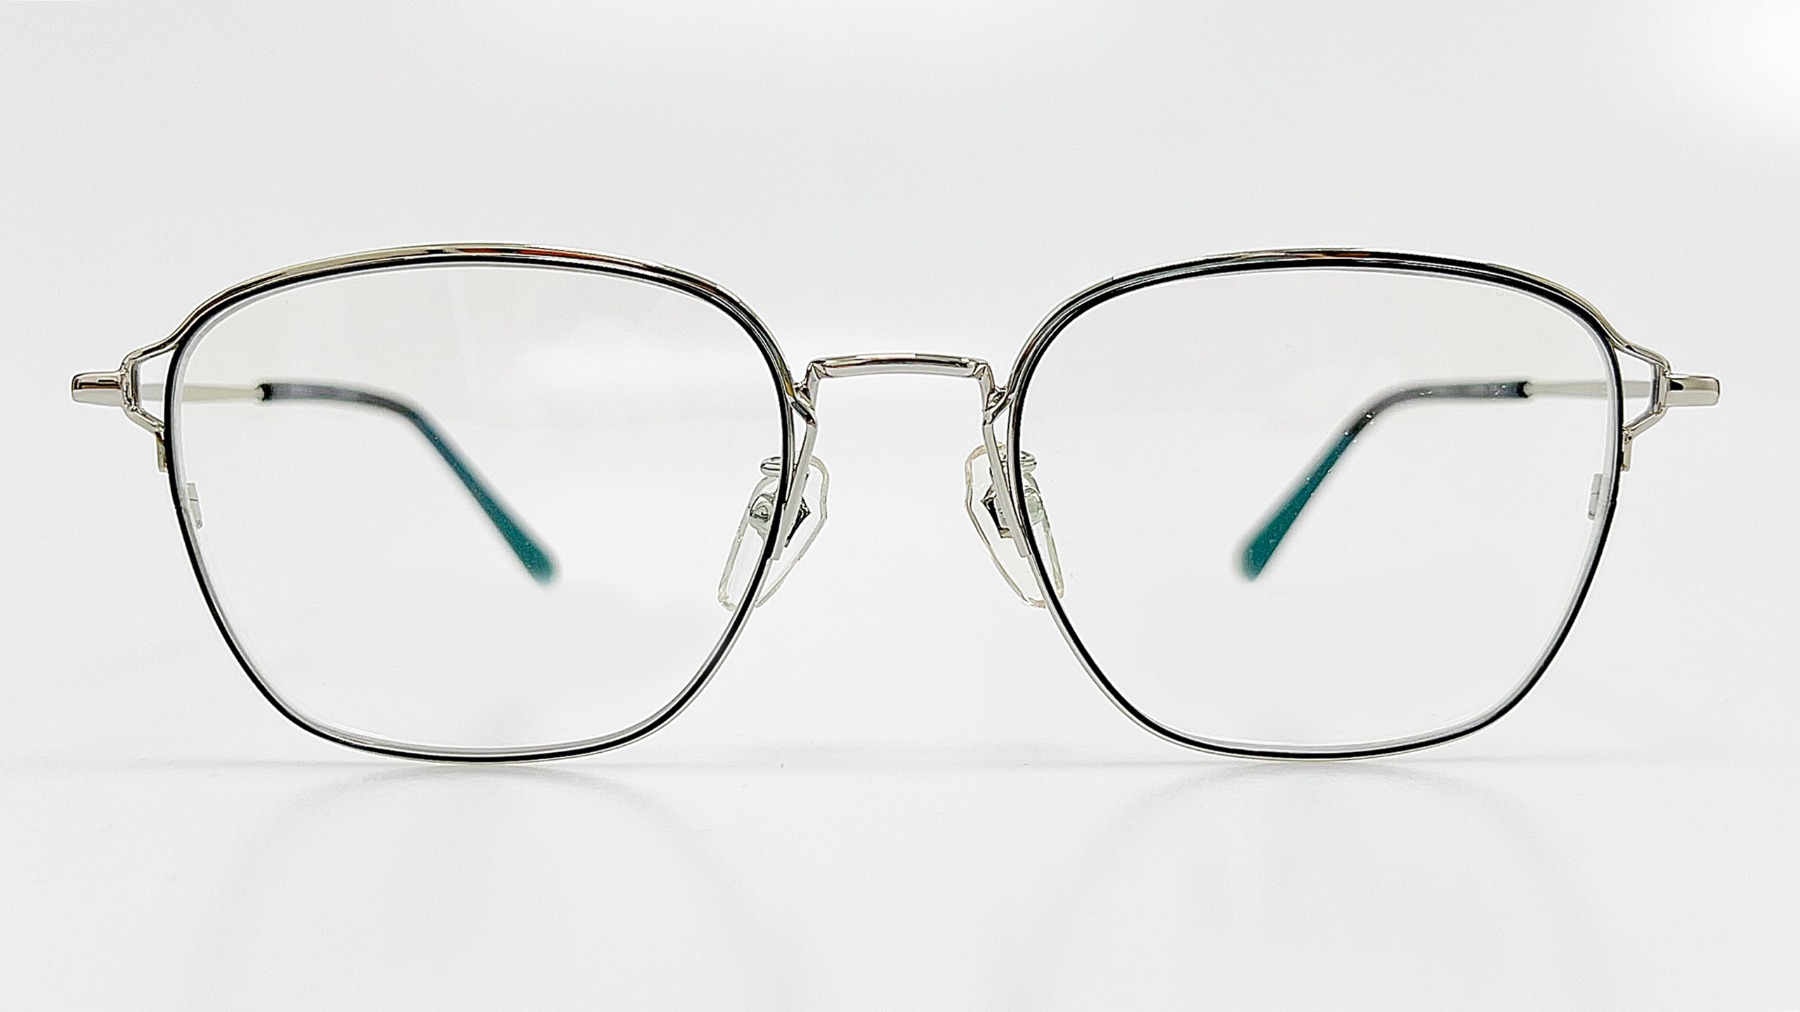 HORIEN_HN8079, Korean glasses, sunglasses, eyeglasses, glasses